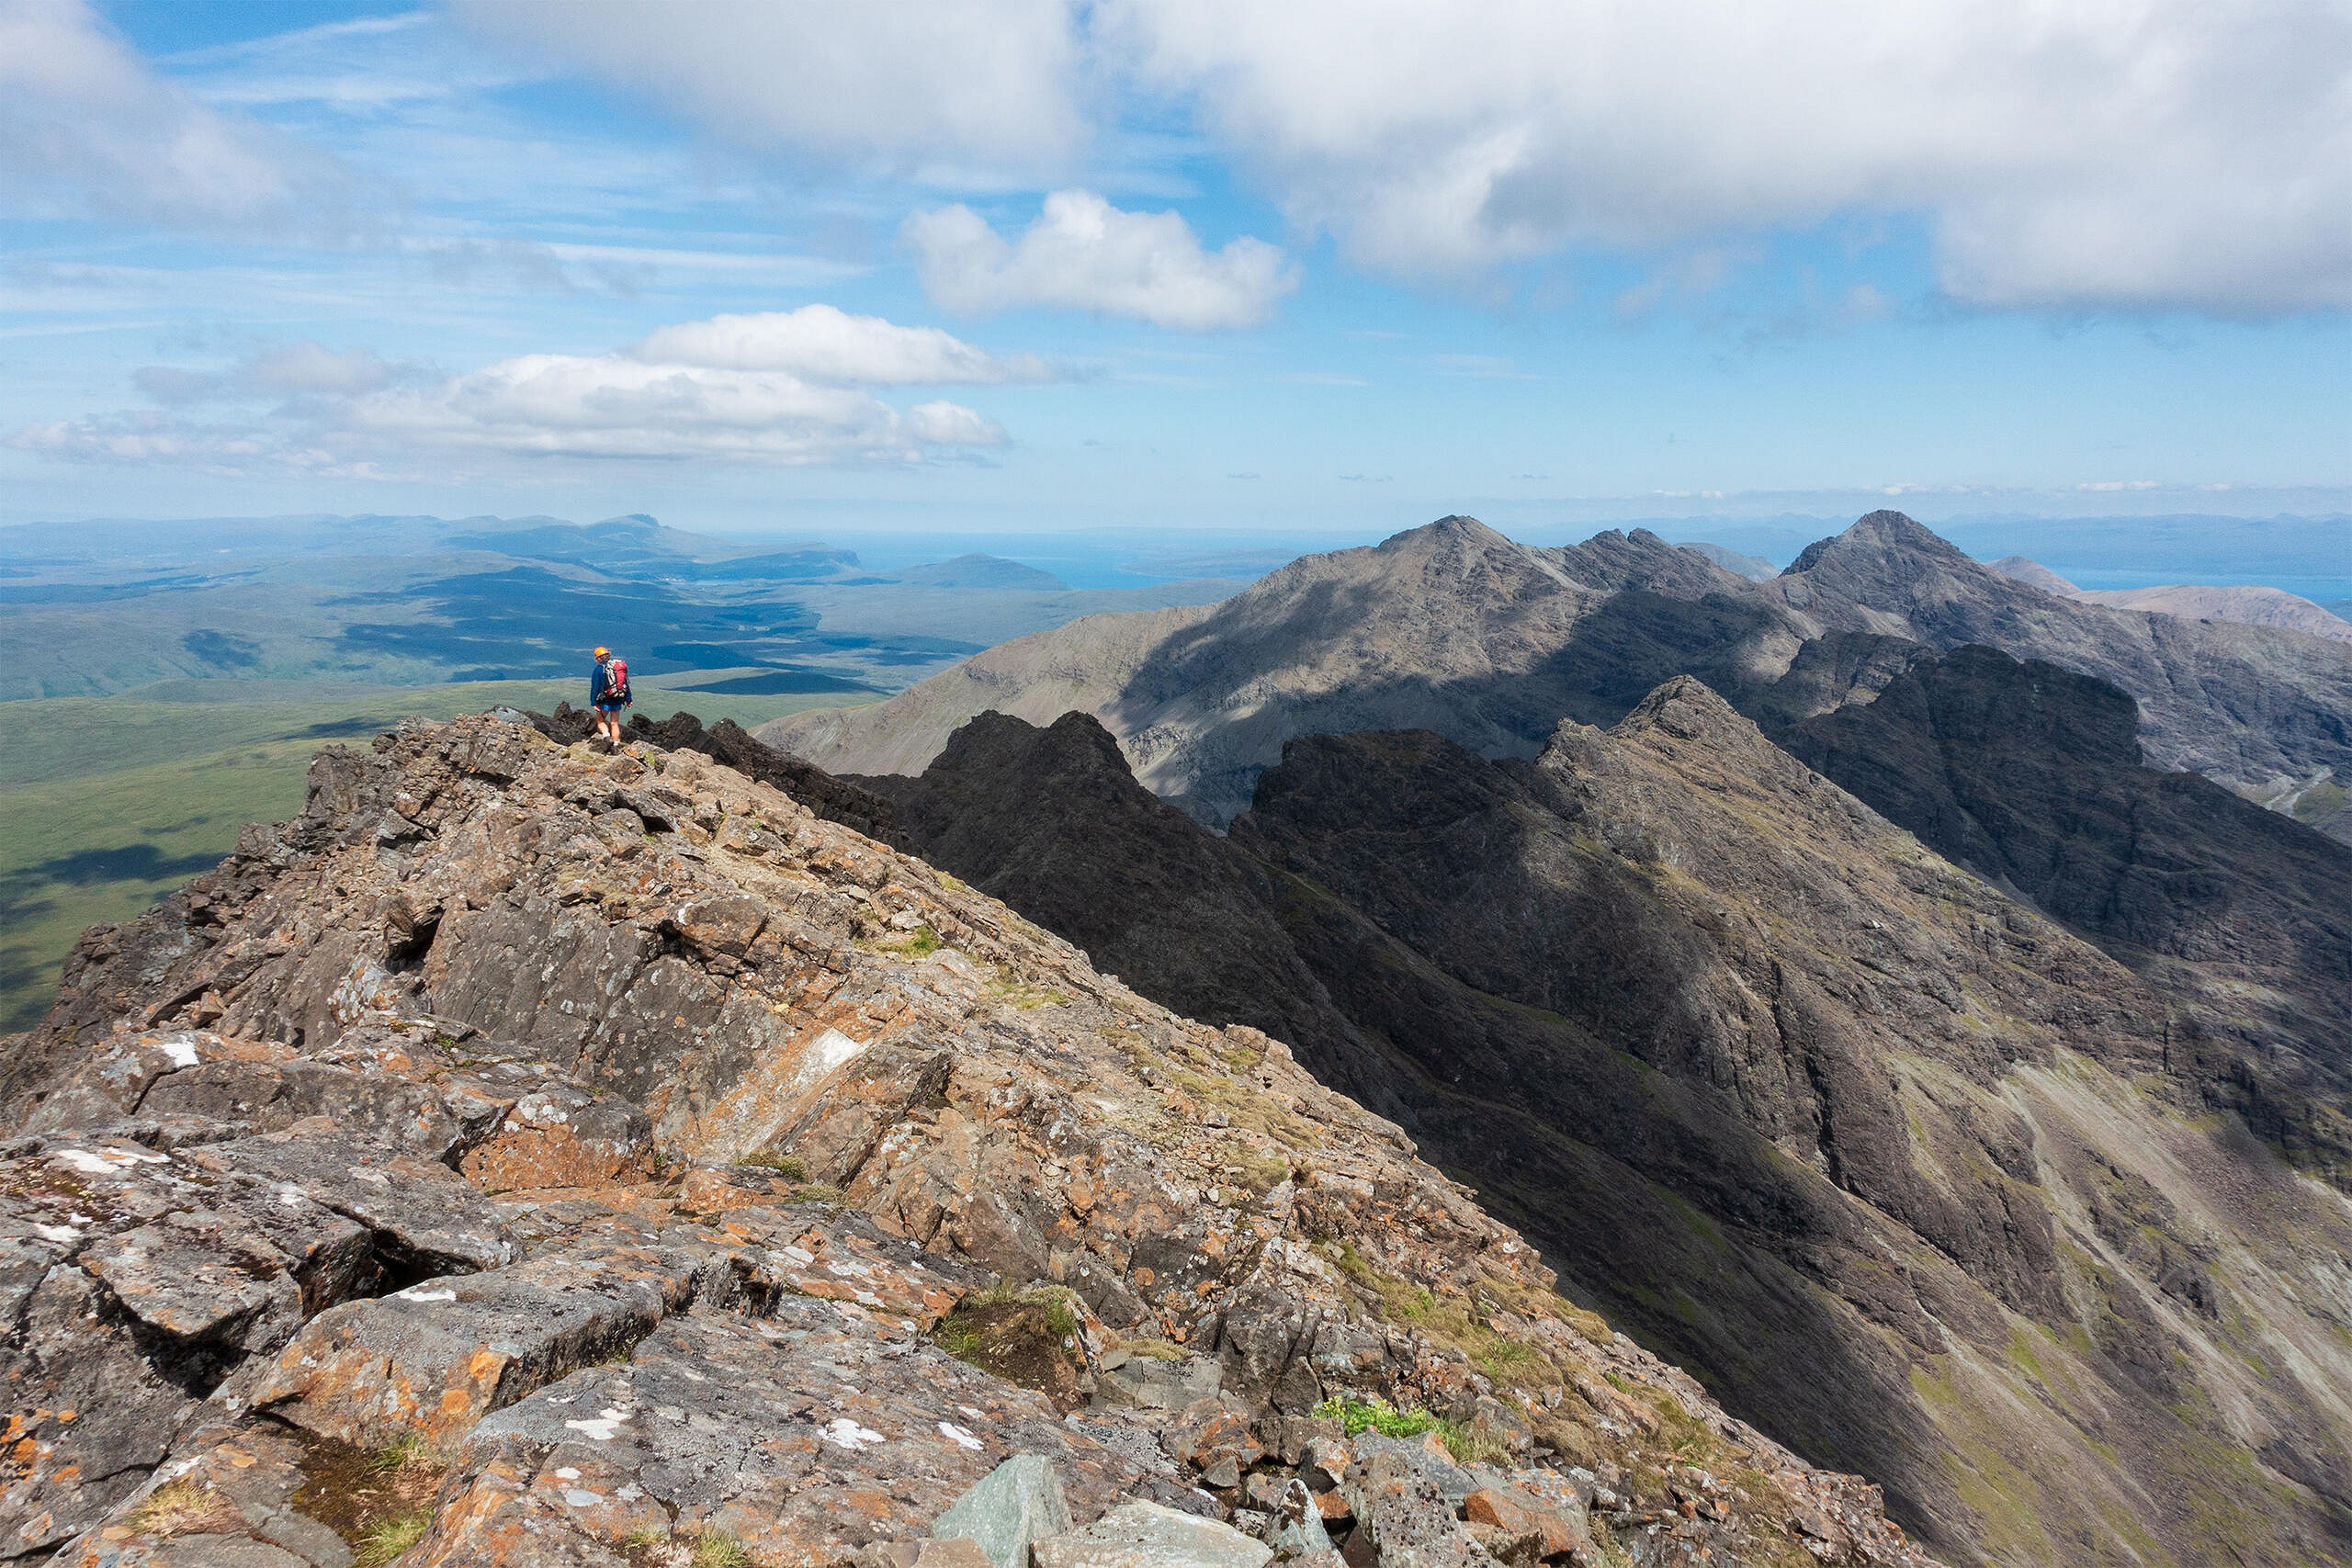 Sgurr a' Mhadaidh and the northern peaks from Sgurr a' Ghreadaidh  © Dan Bailey